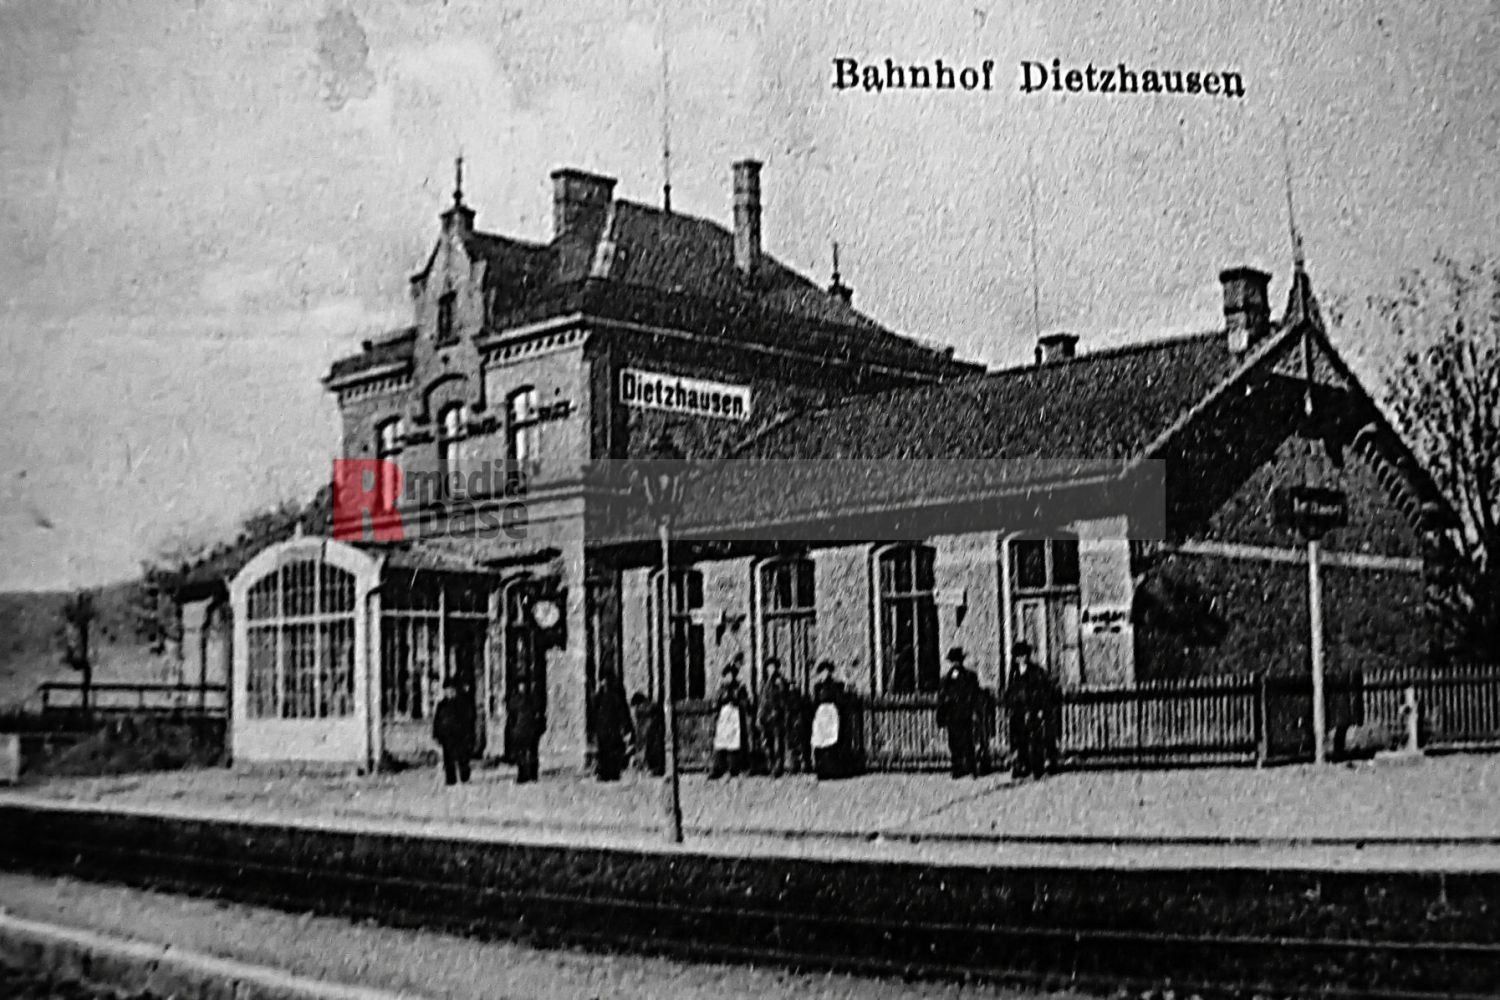 Der Bahnhof in Dietzhausen mit angebauten Stellwerk und Gastwirtschaft <i>Bild Denner/R-mediabase</i> <br><a href=/confor2/?bld=60979&pst=60833&aid=86&dc=1110&i1=Denner/R-mediabase>Anfrage Download Bild 60979</a>  <a href=/wp-admin/post.php?post=60979&action=edit> / Edit</a><br><a href=/?p=60833>Zum Beitrag 60833</a>